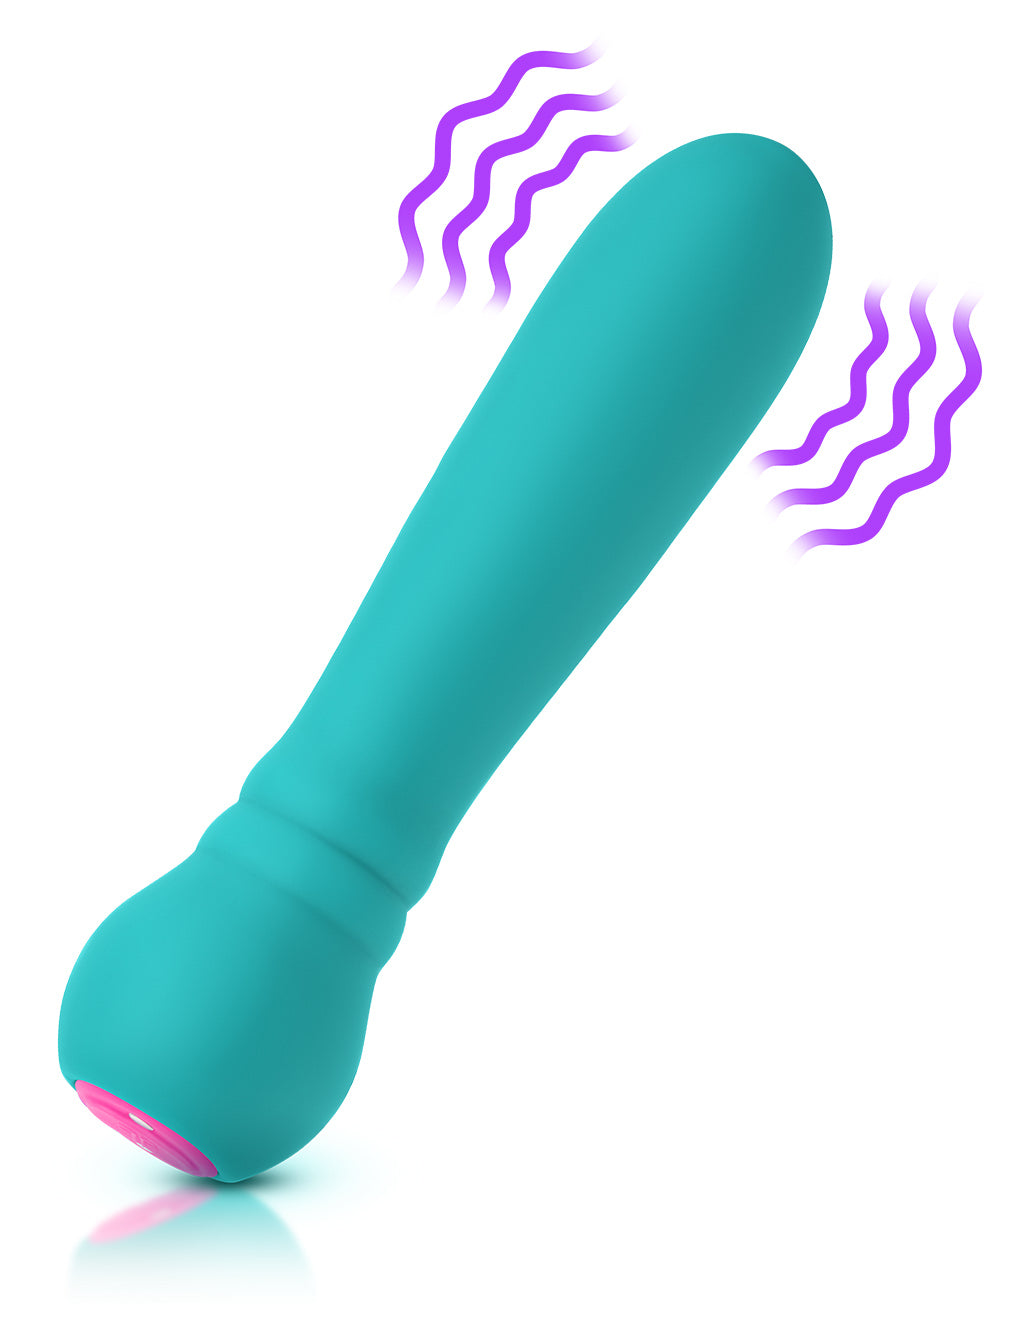 Femme Funn Ultra Bullet- Turquoise- Vibration Diagram